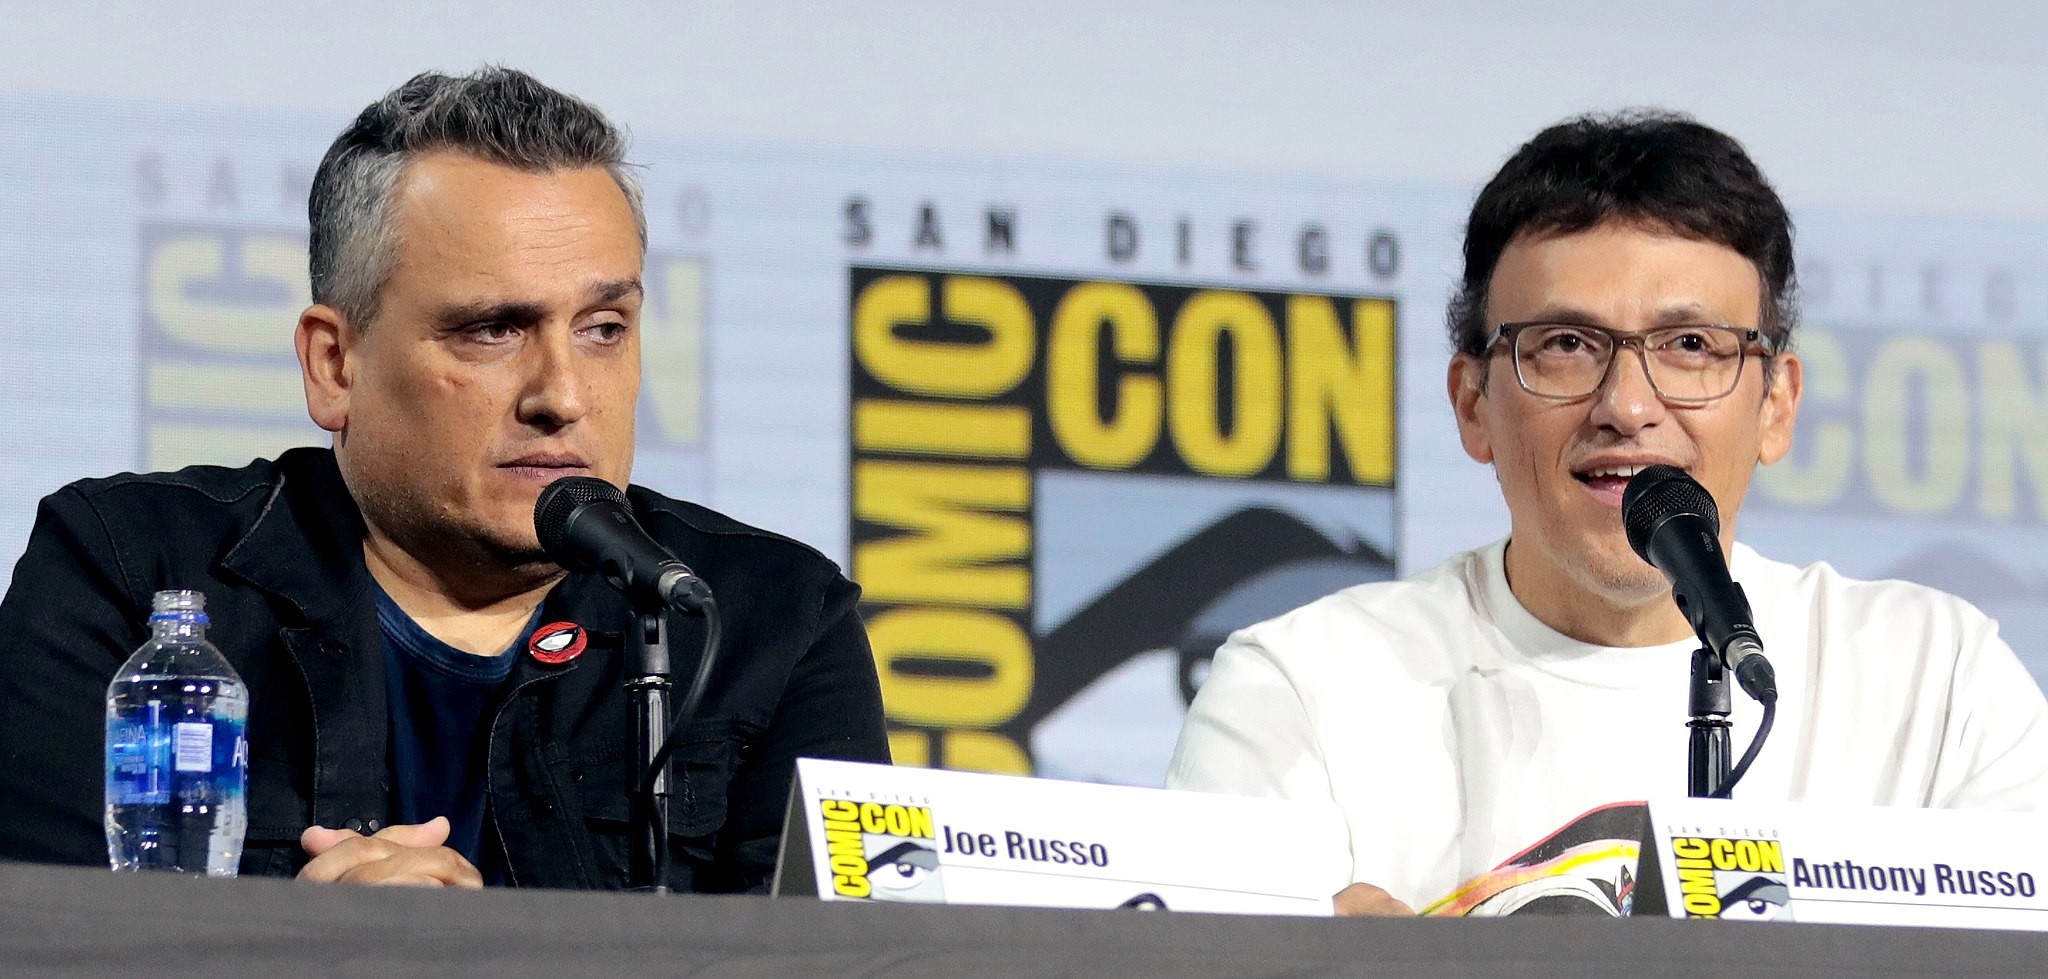 Irmãos Russo na Comic Con San Diego em 2019 (Foto: Wikimedia Commons)